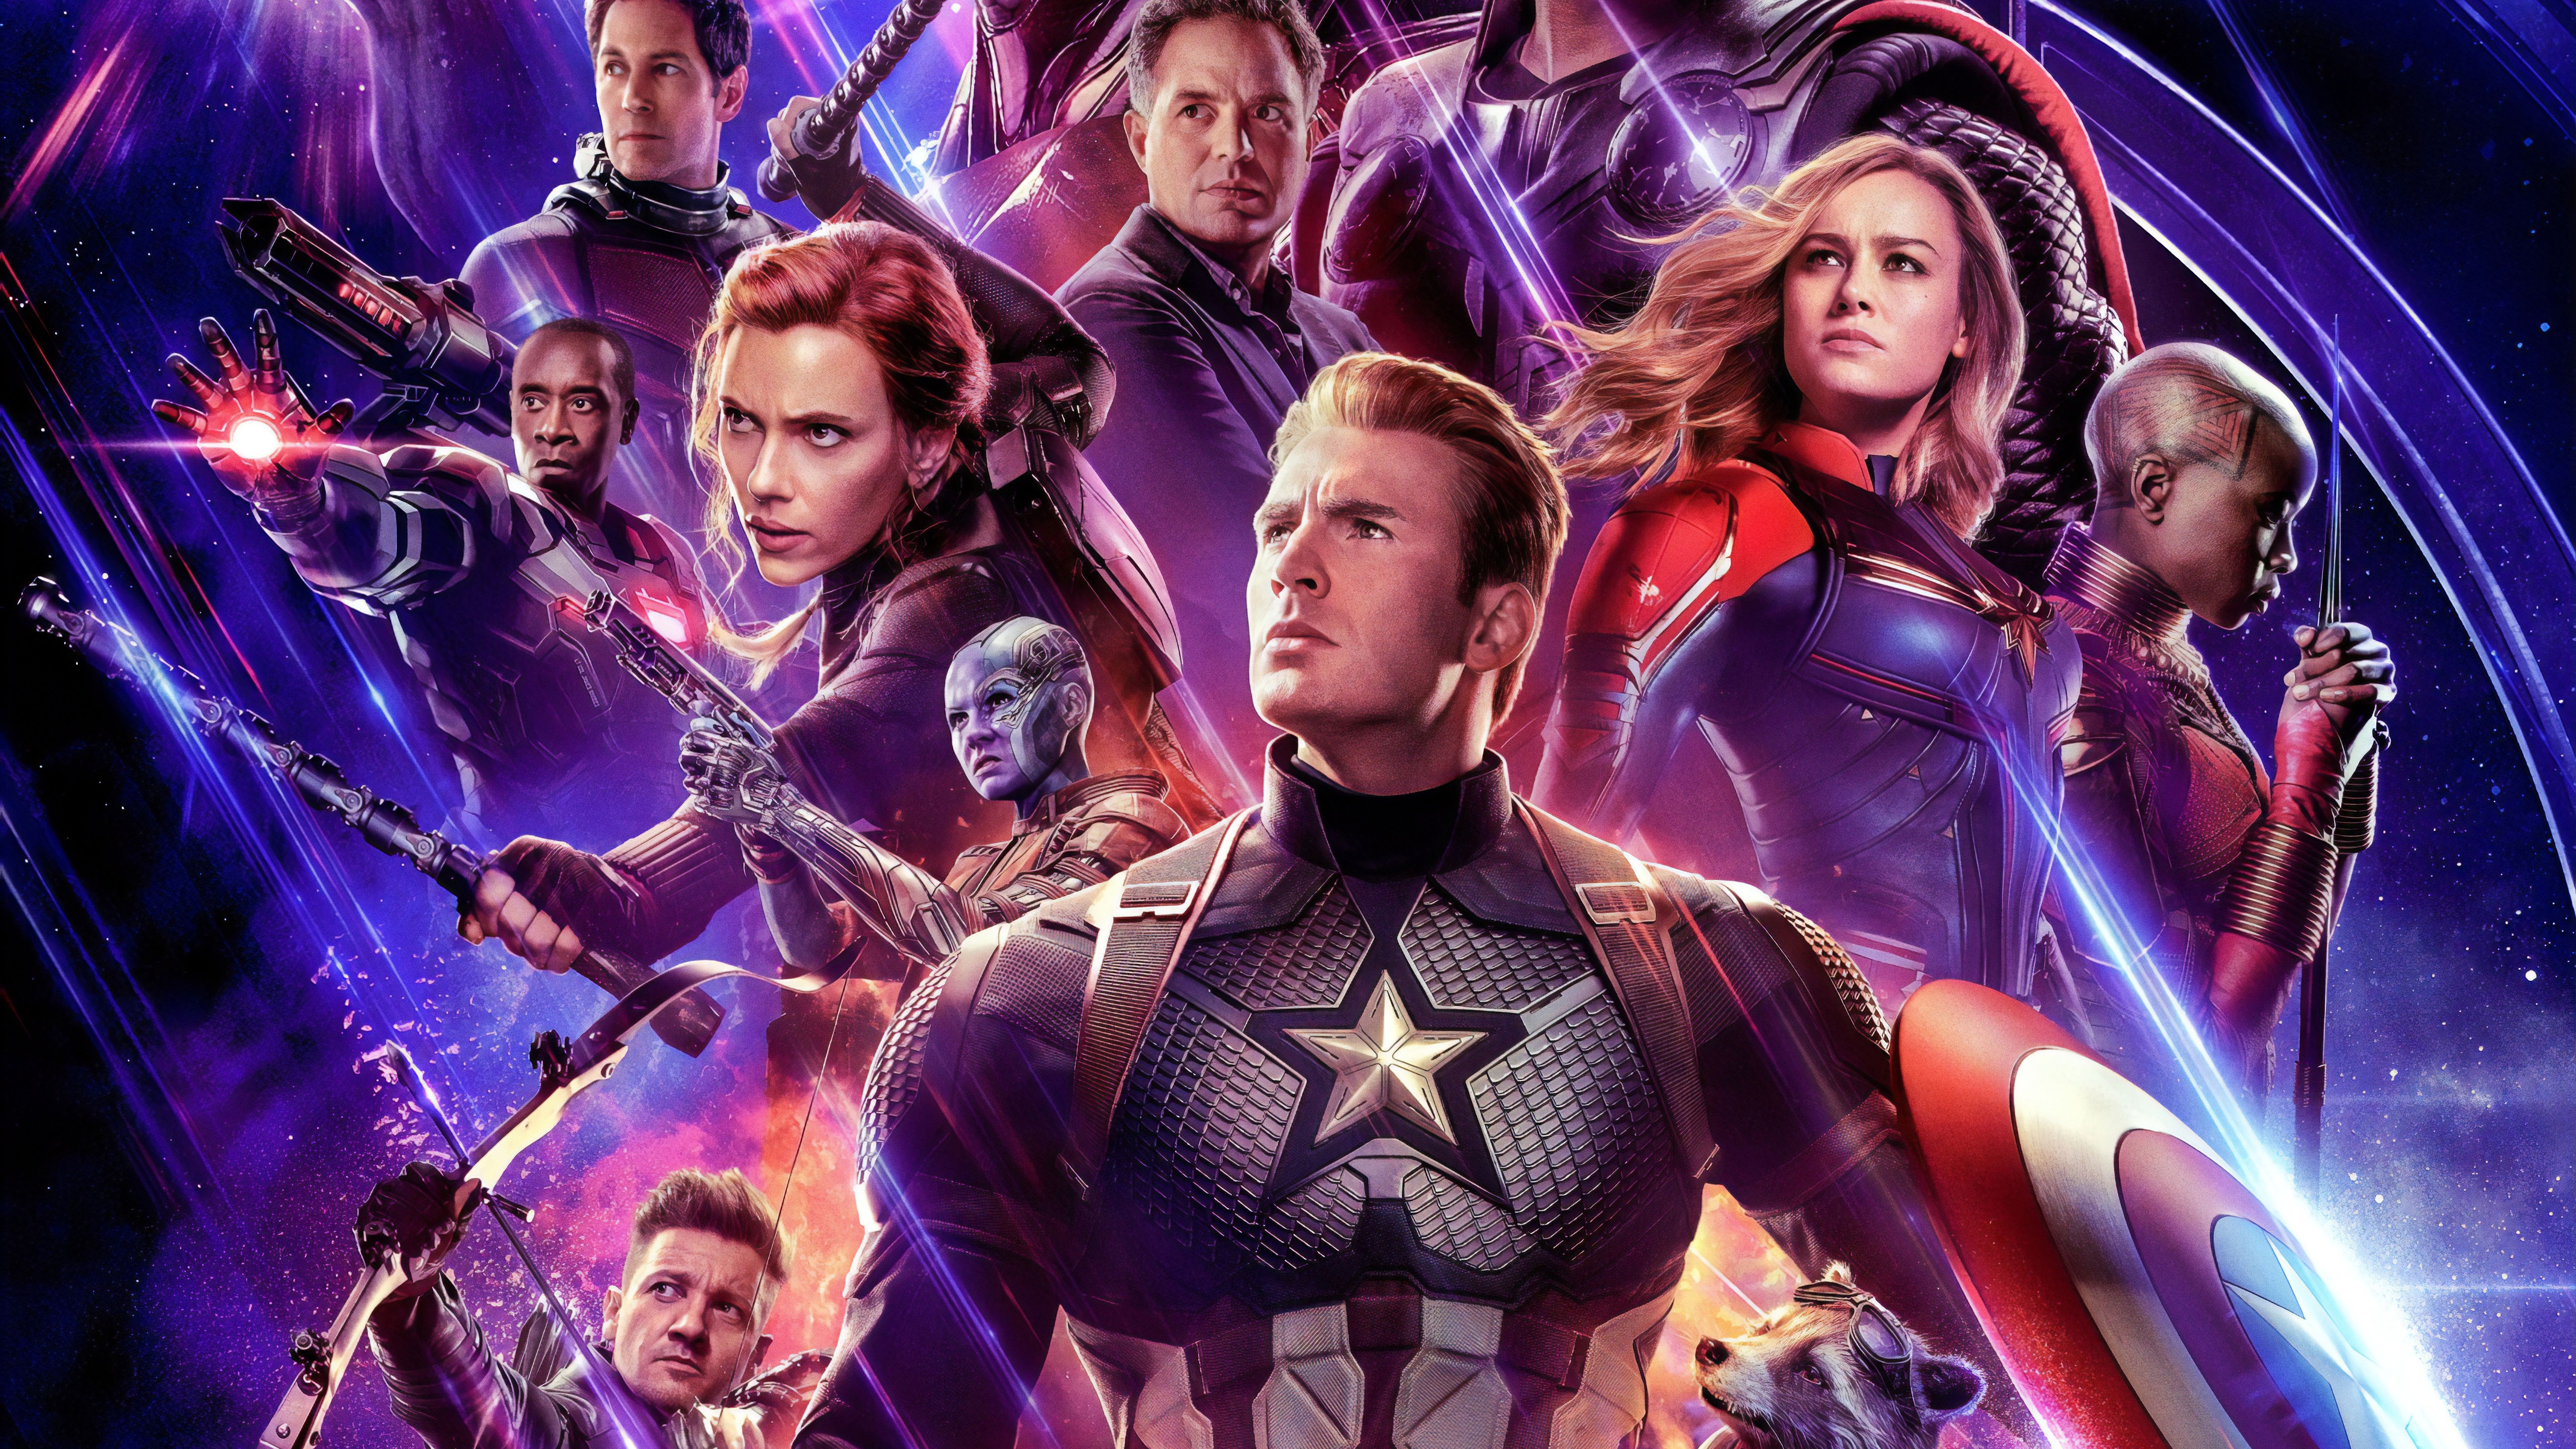 Avengers: Endgame Cast Characters 8K Wallpaper